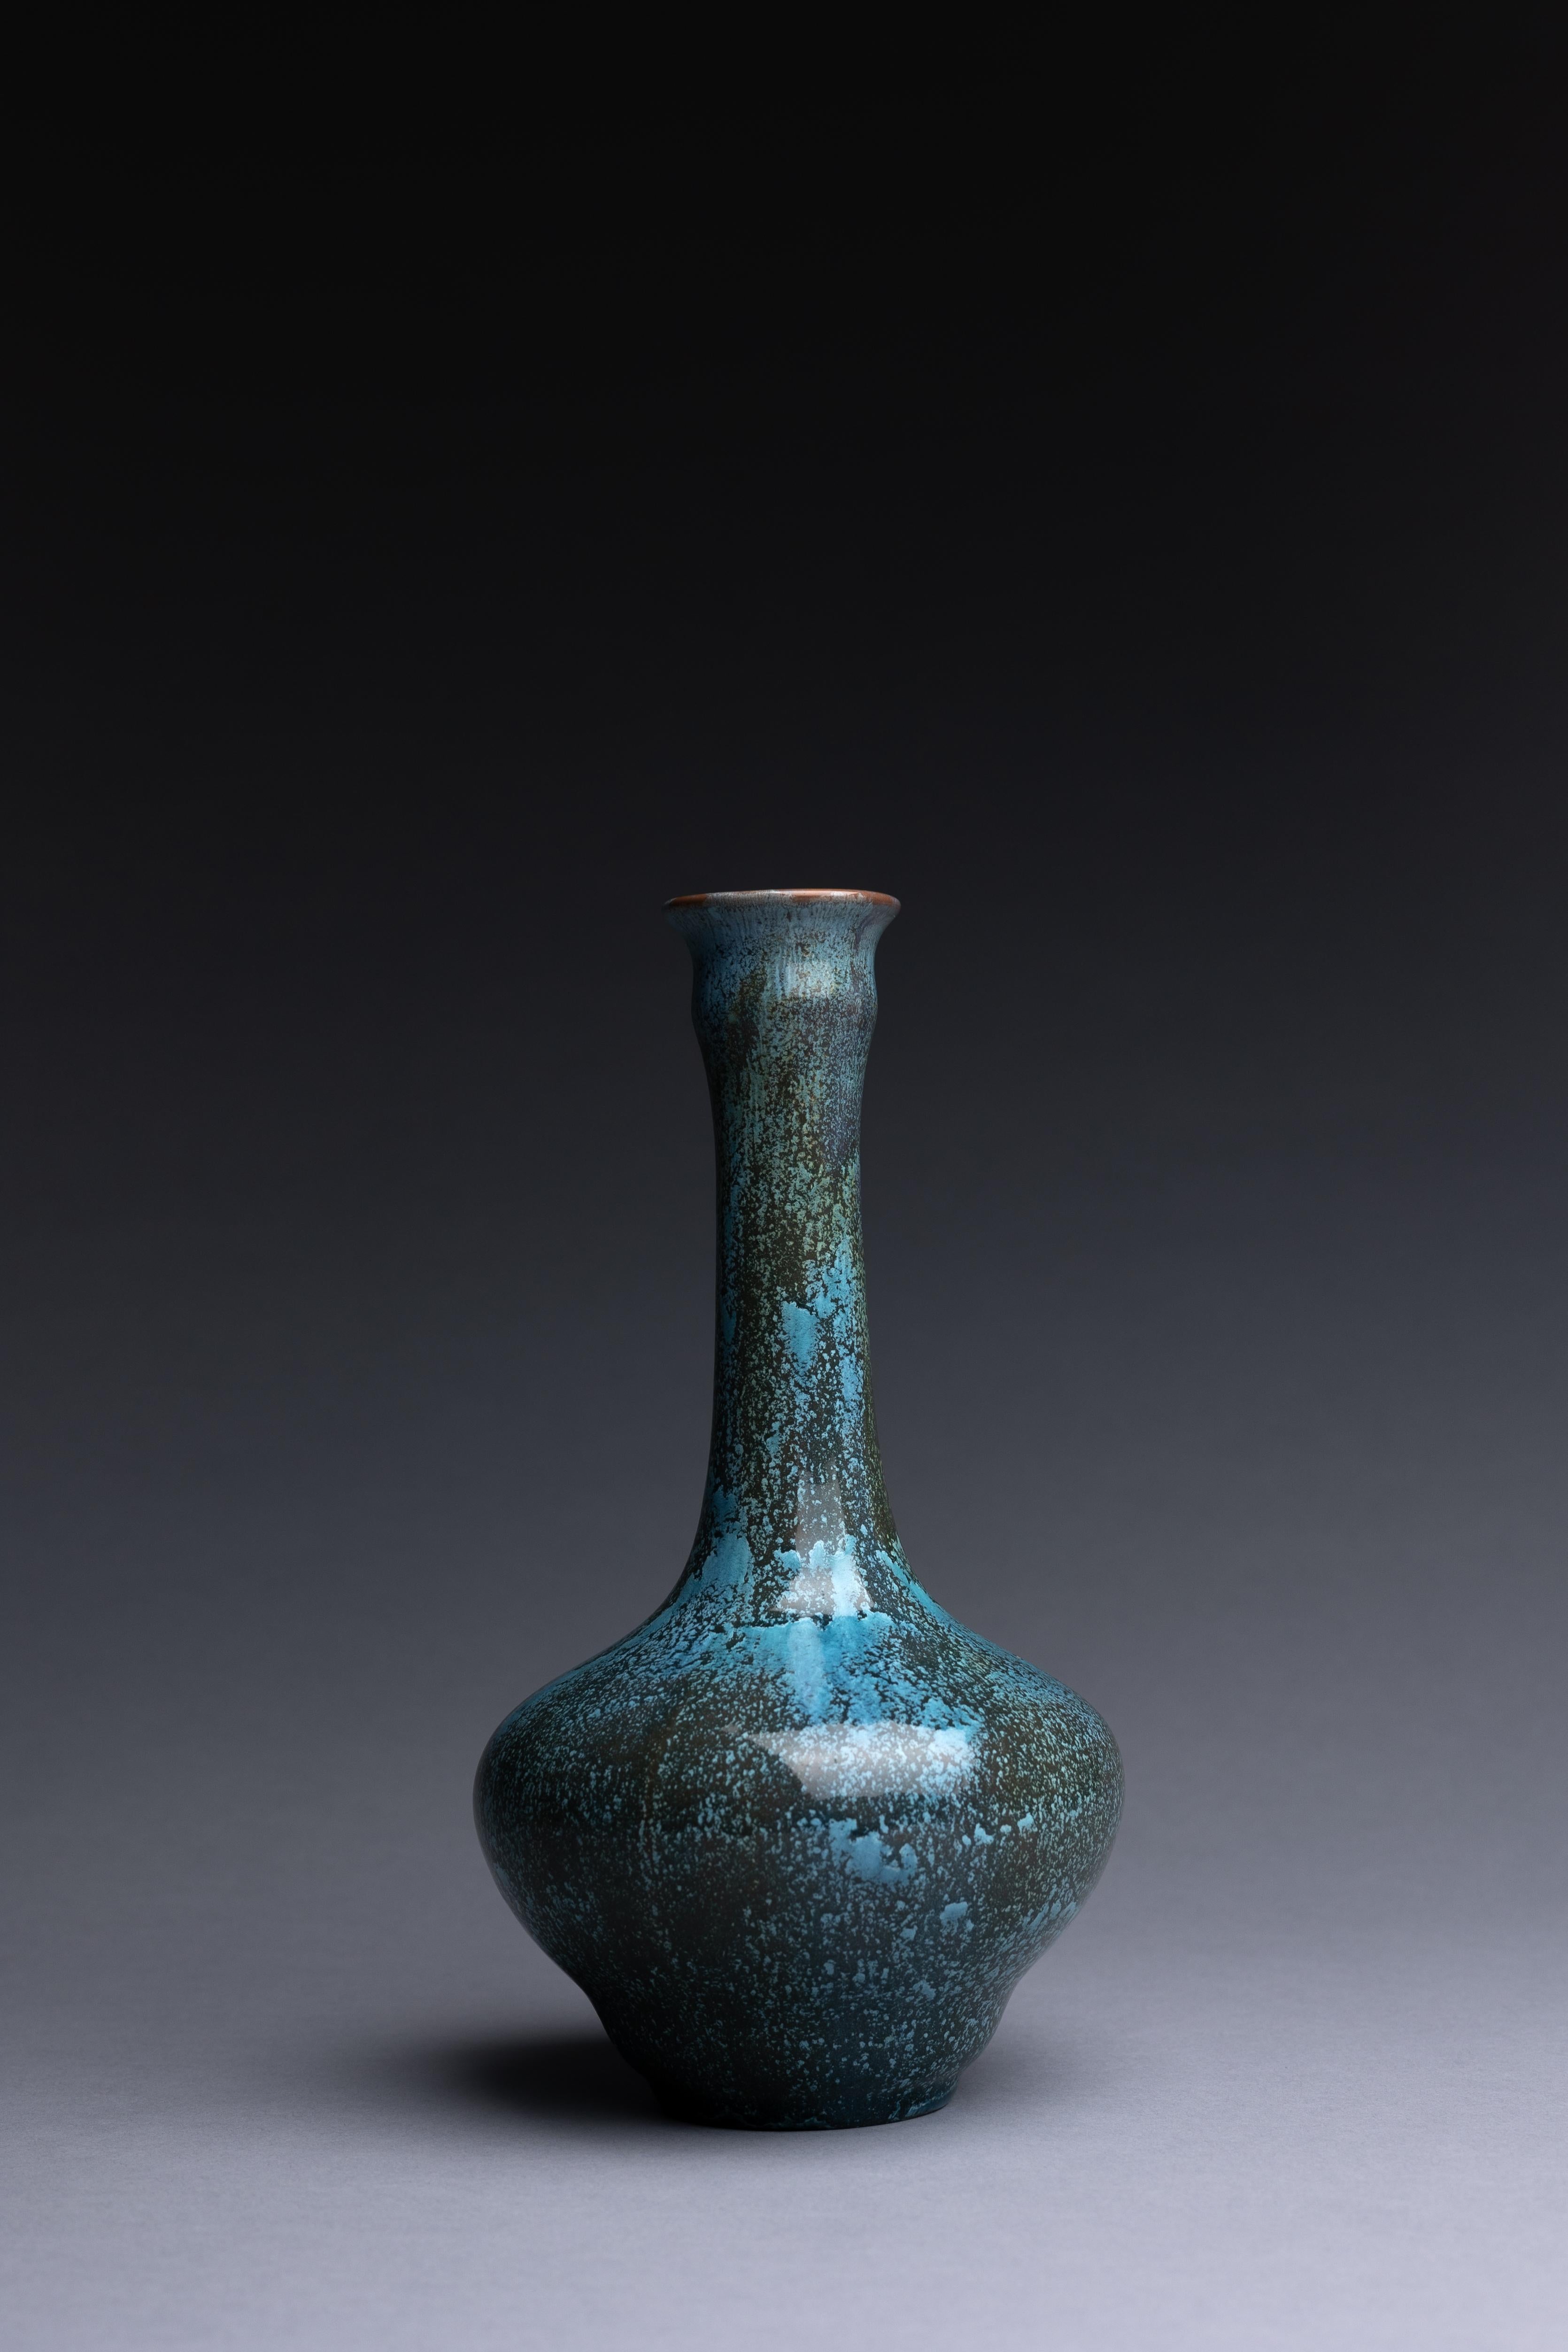 Un vase en poterie d'art fabriqué par Pilkingtons avec une glaçure bleue cristalline, créé vers 1910. Ce vase est un bel exemple de la poterie d'art de l'atelier Pilkington.

La poterie d'art émaillée monochrome de Pilkington célèbre les innovations